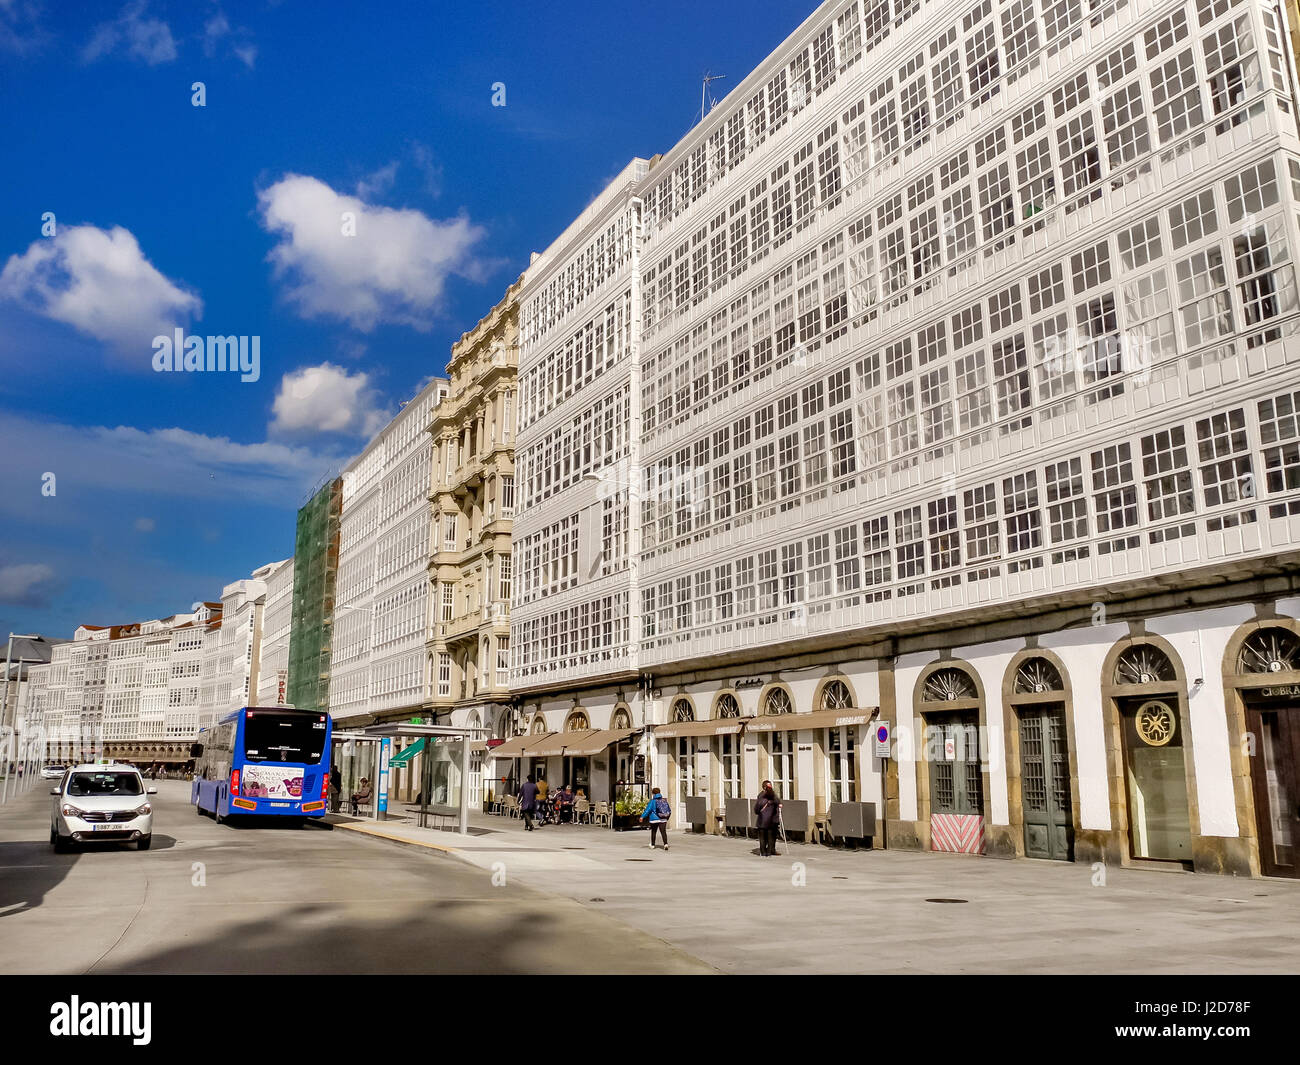 LA CORUNA, Spagna - 27 Marzo 2017: vista sulla famosa architettura con balconi in vetro a 'Crystal City' accanto alla City Hall a Maria Pita square Foto Stock